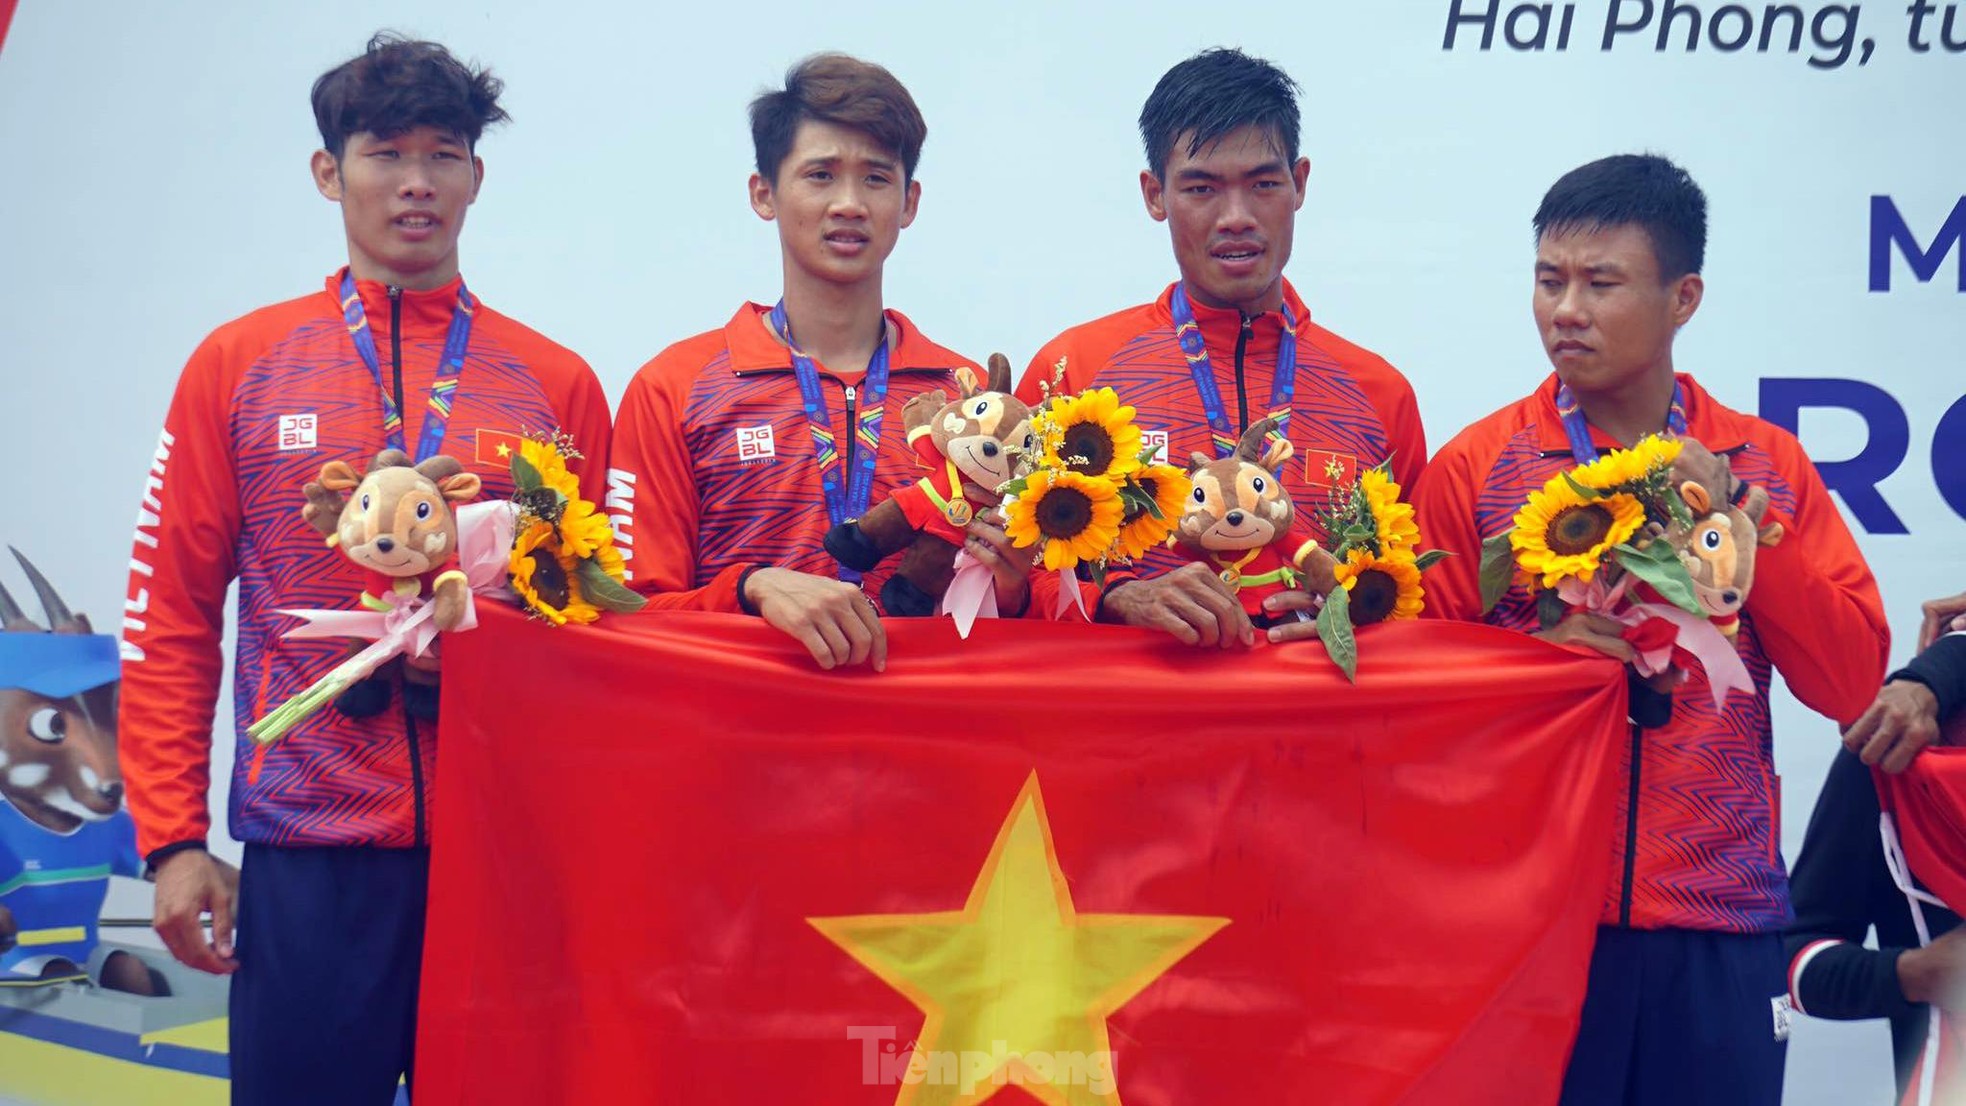 Rowing nữ vượt trội đối thủ, giành thêm 2 HCV cho Việt Nam ảnh 7